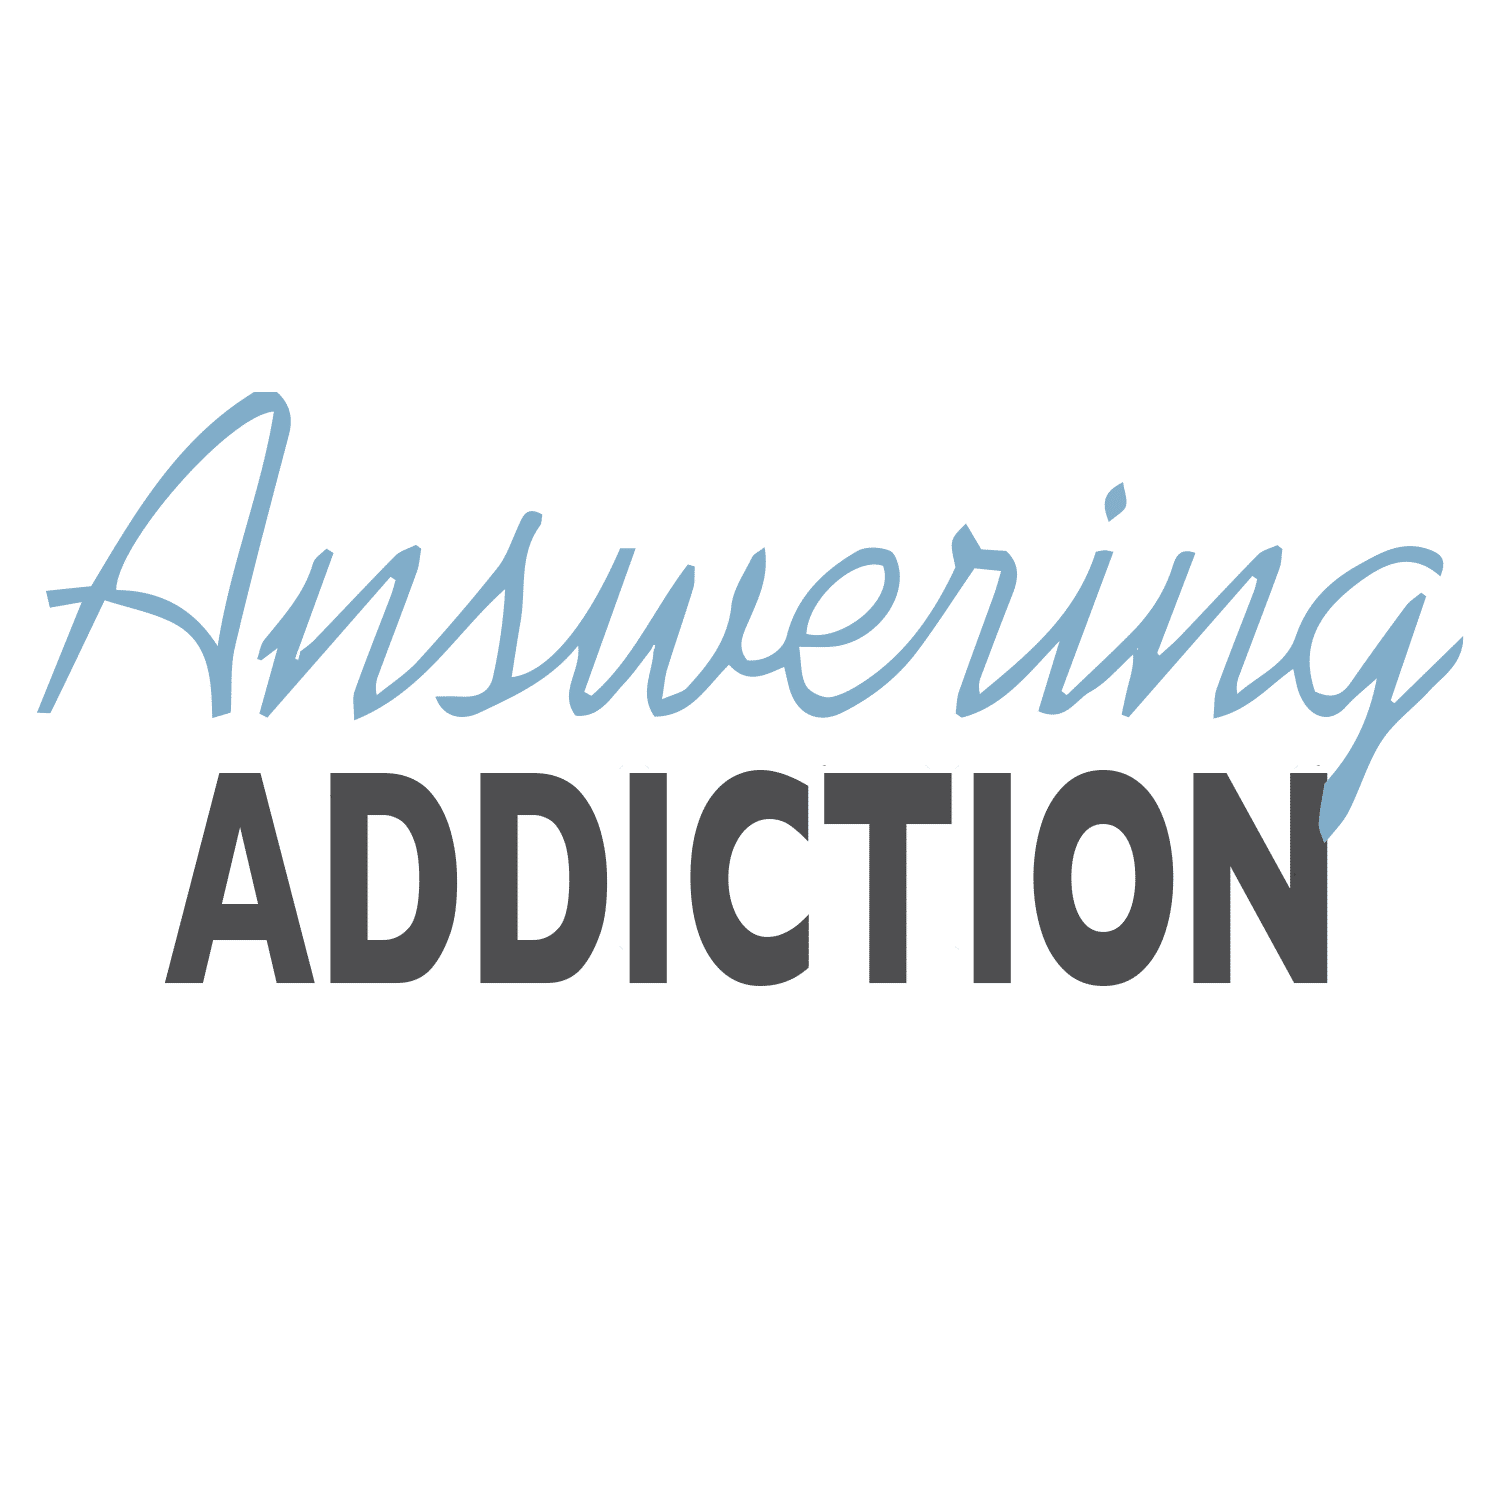 Answering Addiction